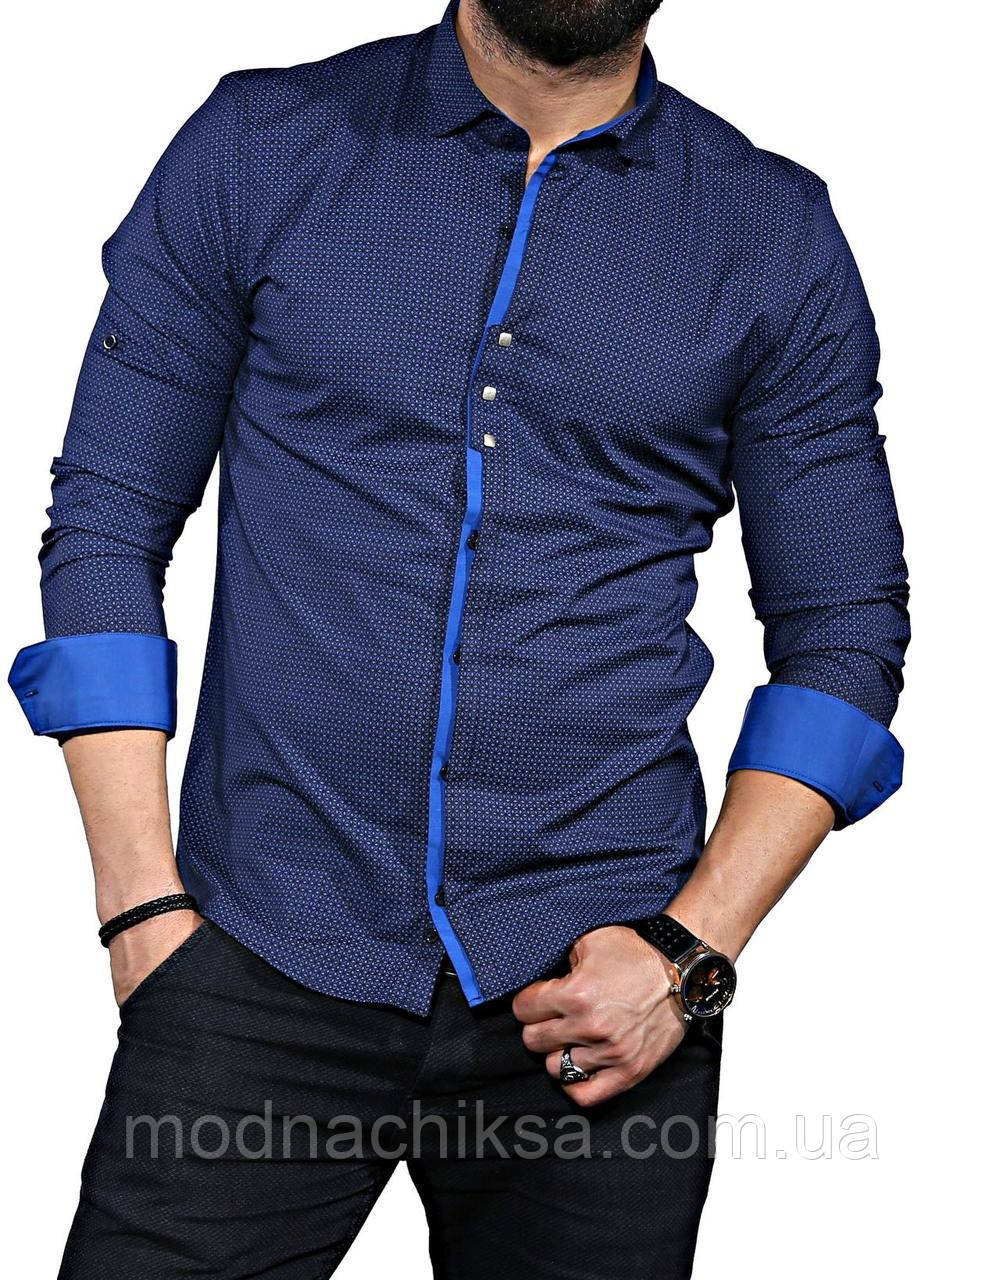 Рубашка мужская турция купить. Синяя рубашка мужская. Синяя рубашка мужская с длинным рукавом. Голубая рубашка мужская с длинным рукавом. Темно синяя рубашка.